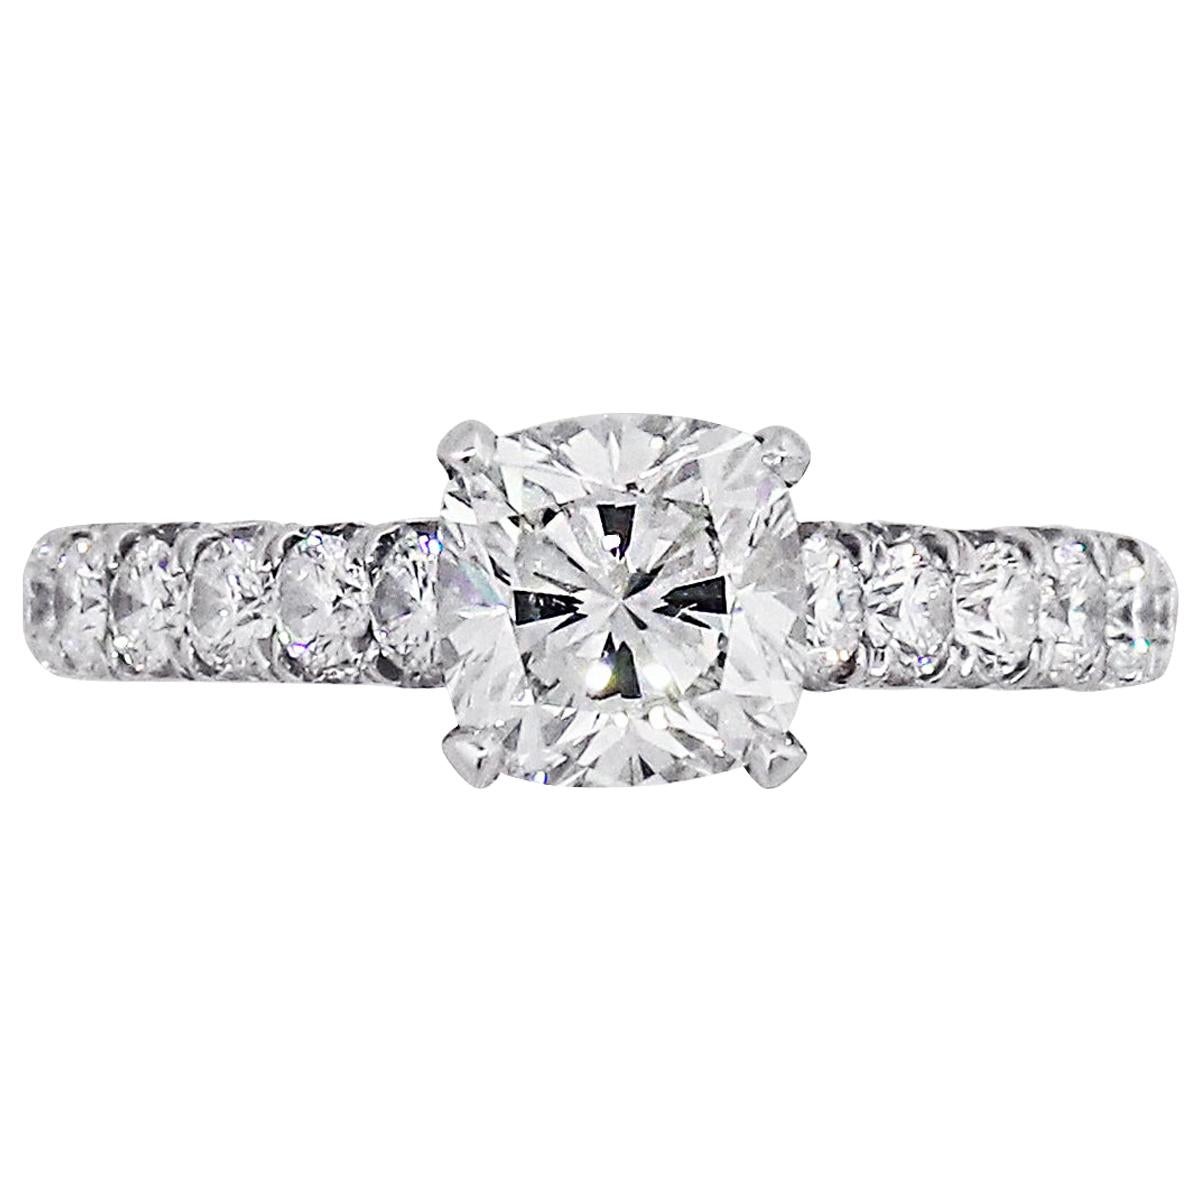 Unique GIA Christopher Designs Criss Cut Emerald Cut Engagement Ring ...